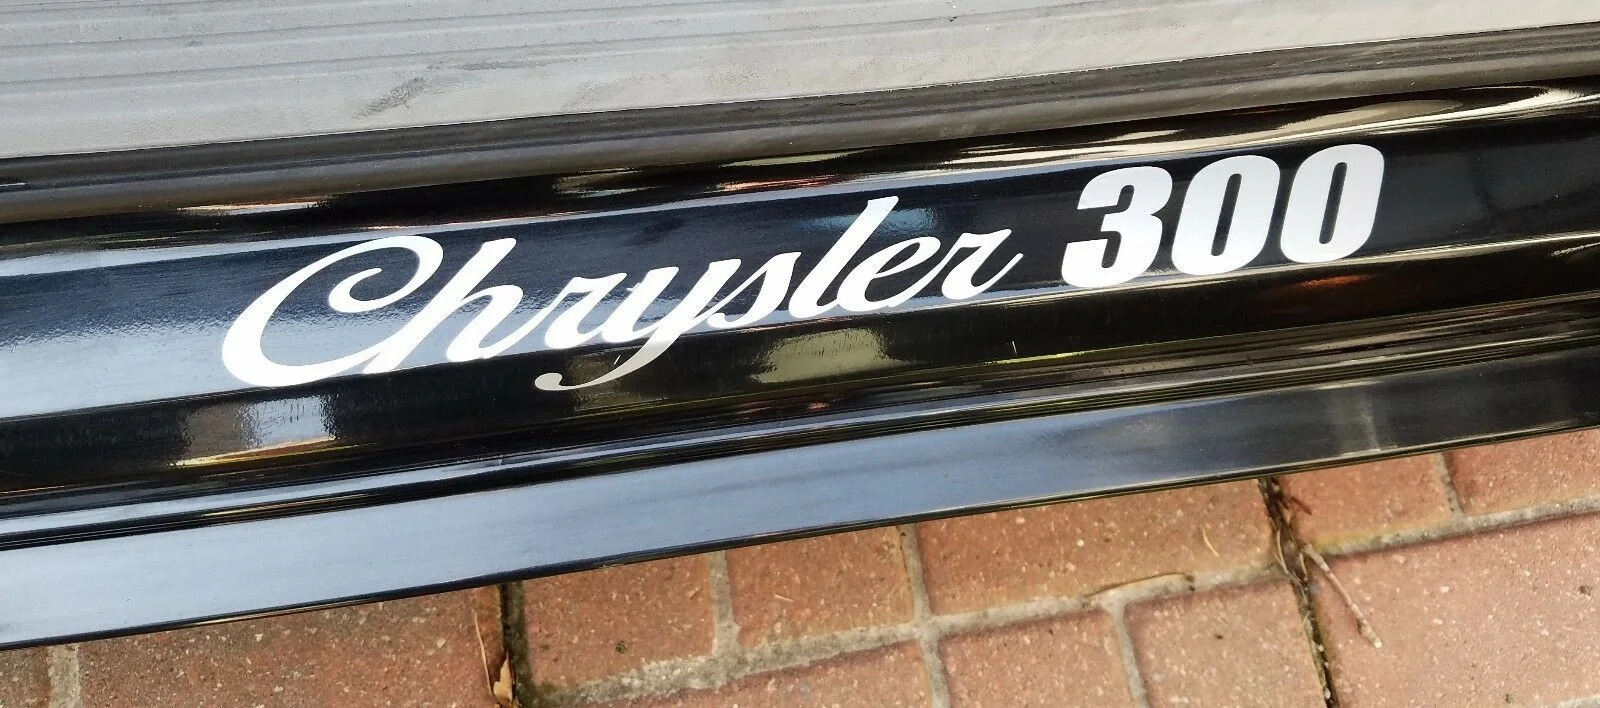 

For x4 Chrysler 300 door sill decal set. sticker.